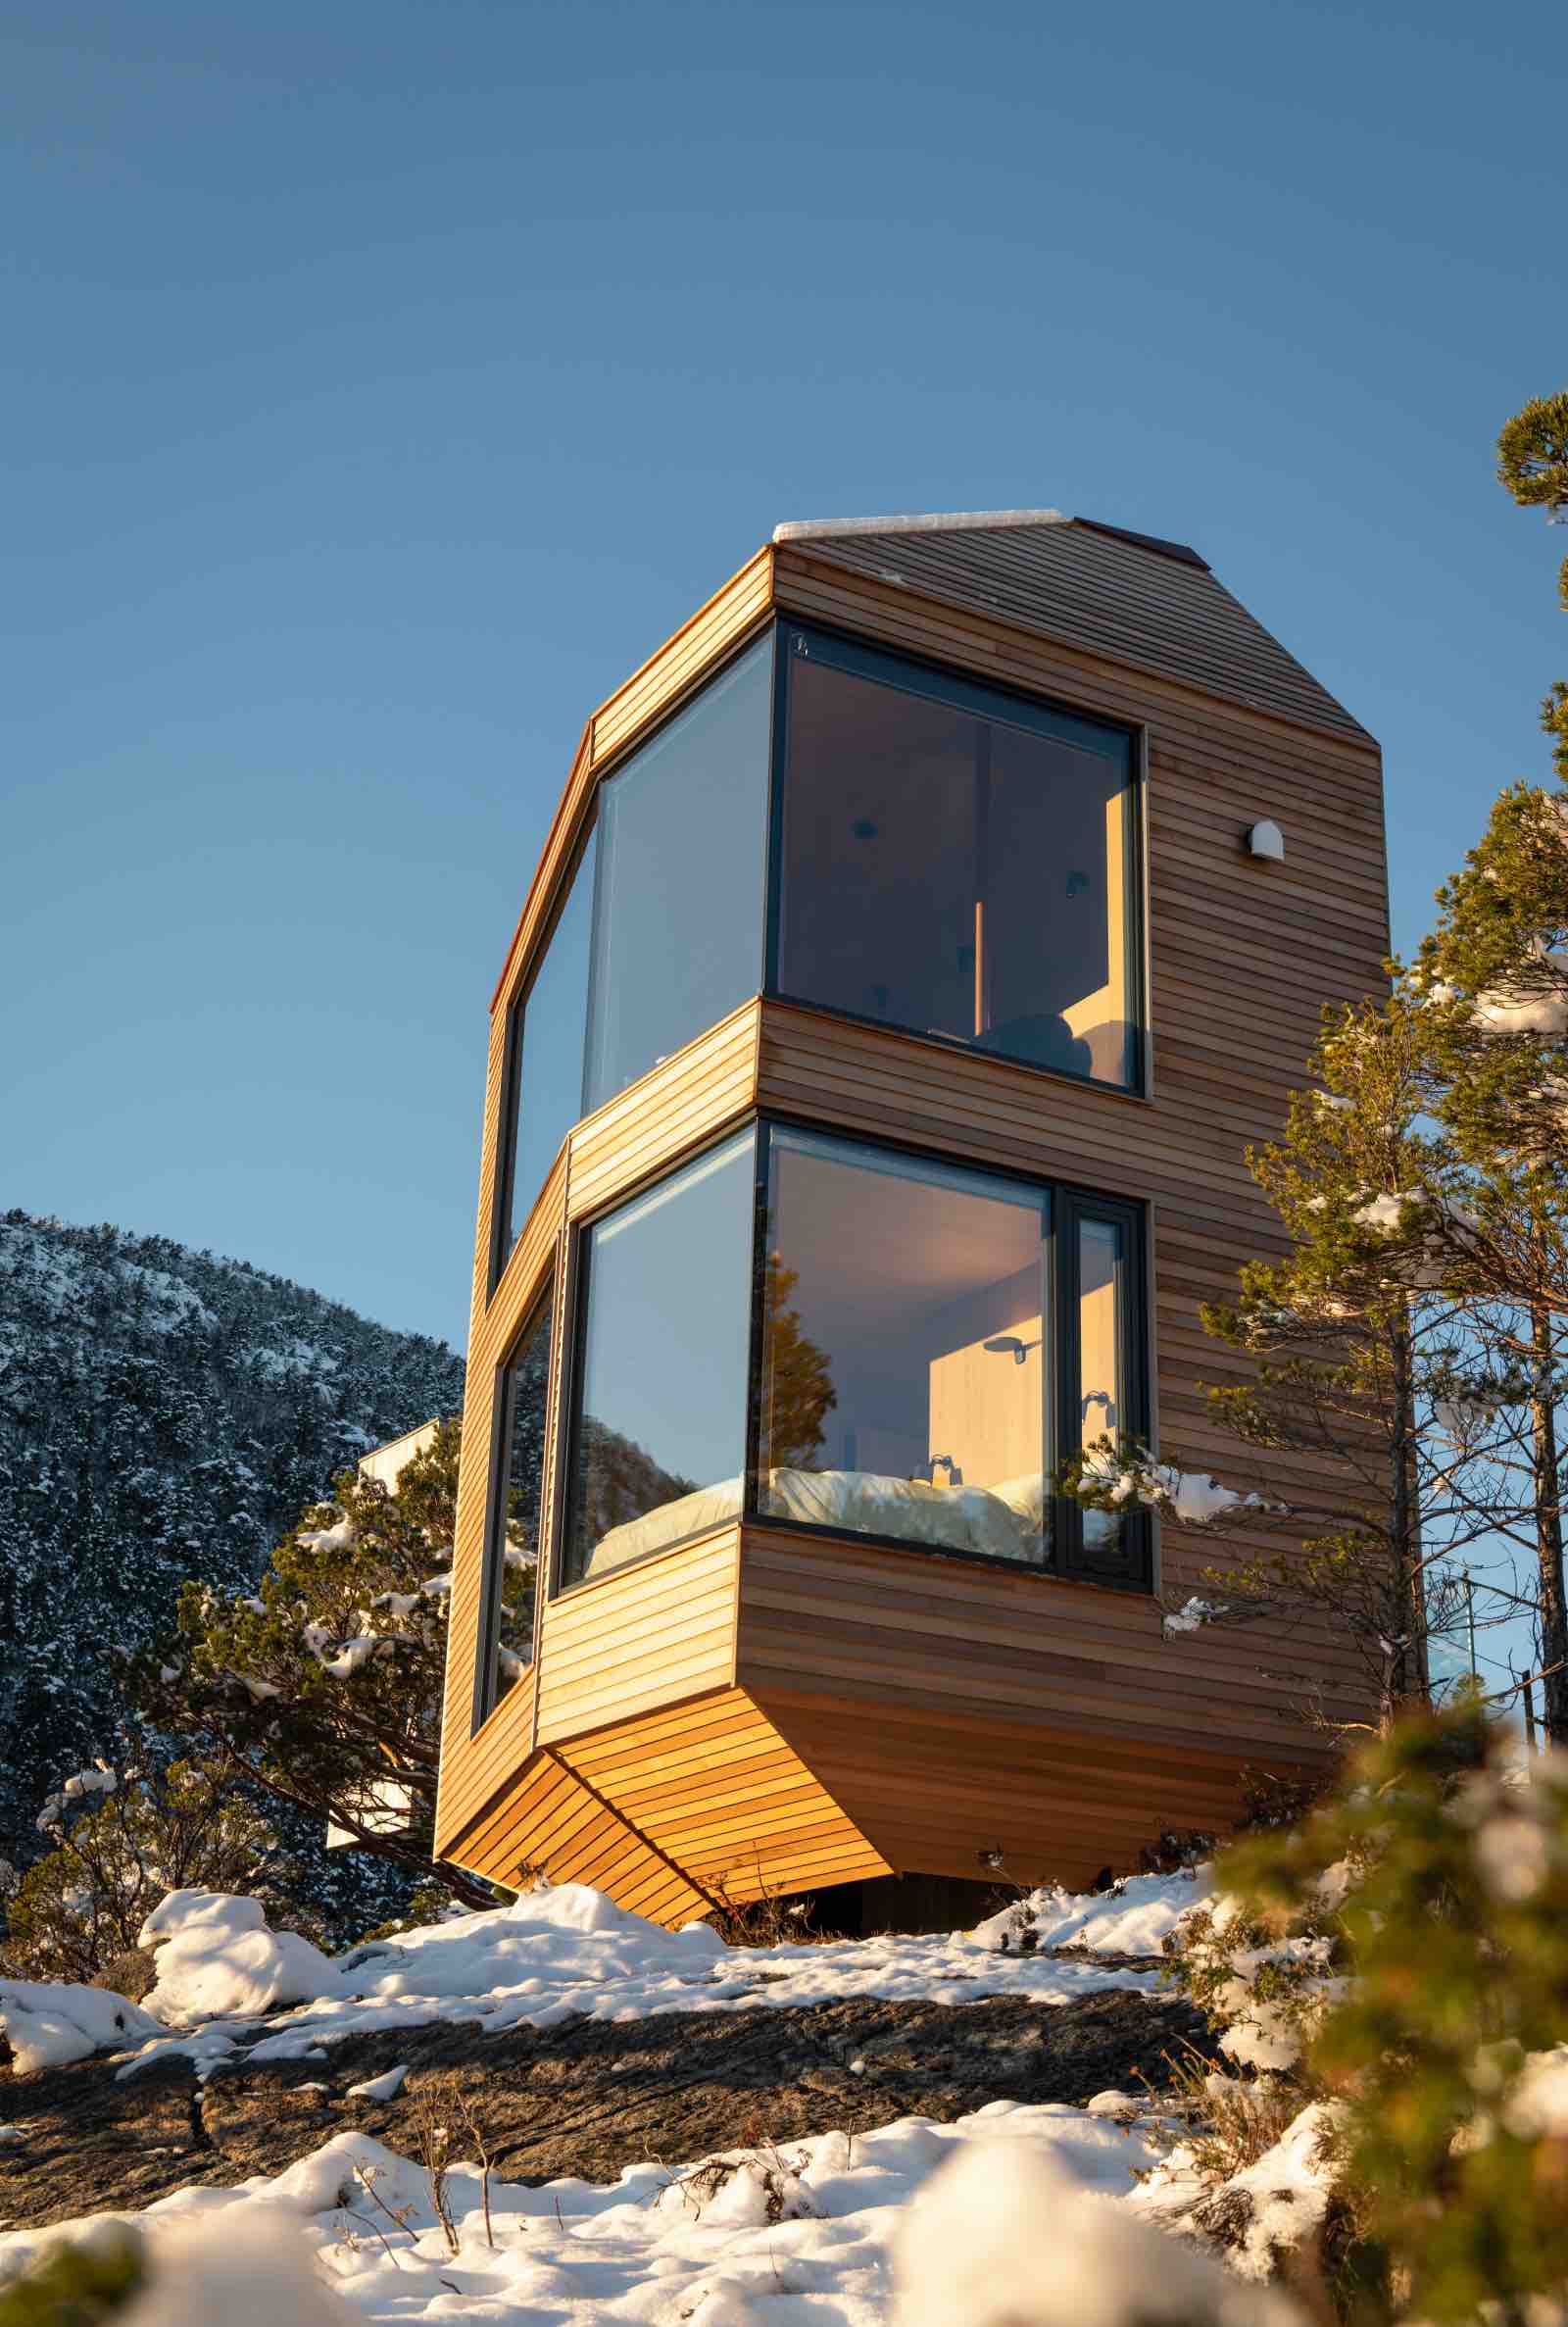 Cubo de dos pisos envuelto en madera de cedro canadiense con grandes ventanales que permiten la entrada de luz natural. Fotografía: Elin Engelsvoll /The Bolder. - imagen 2